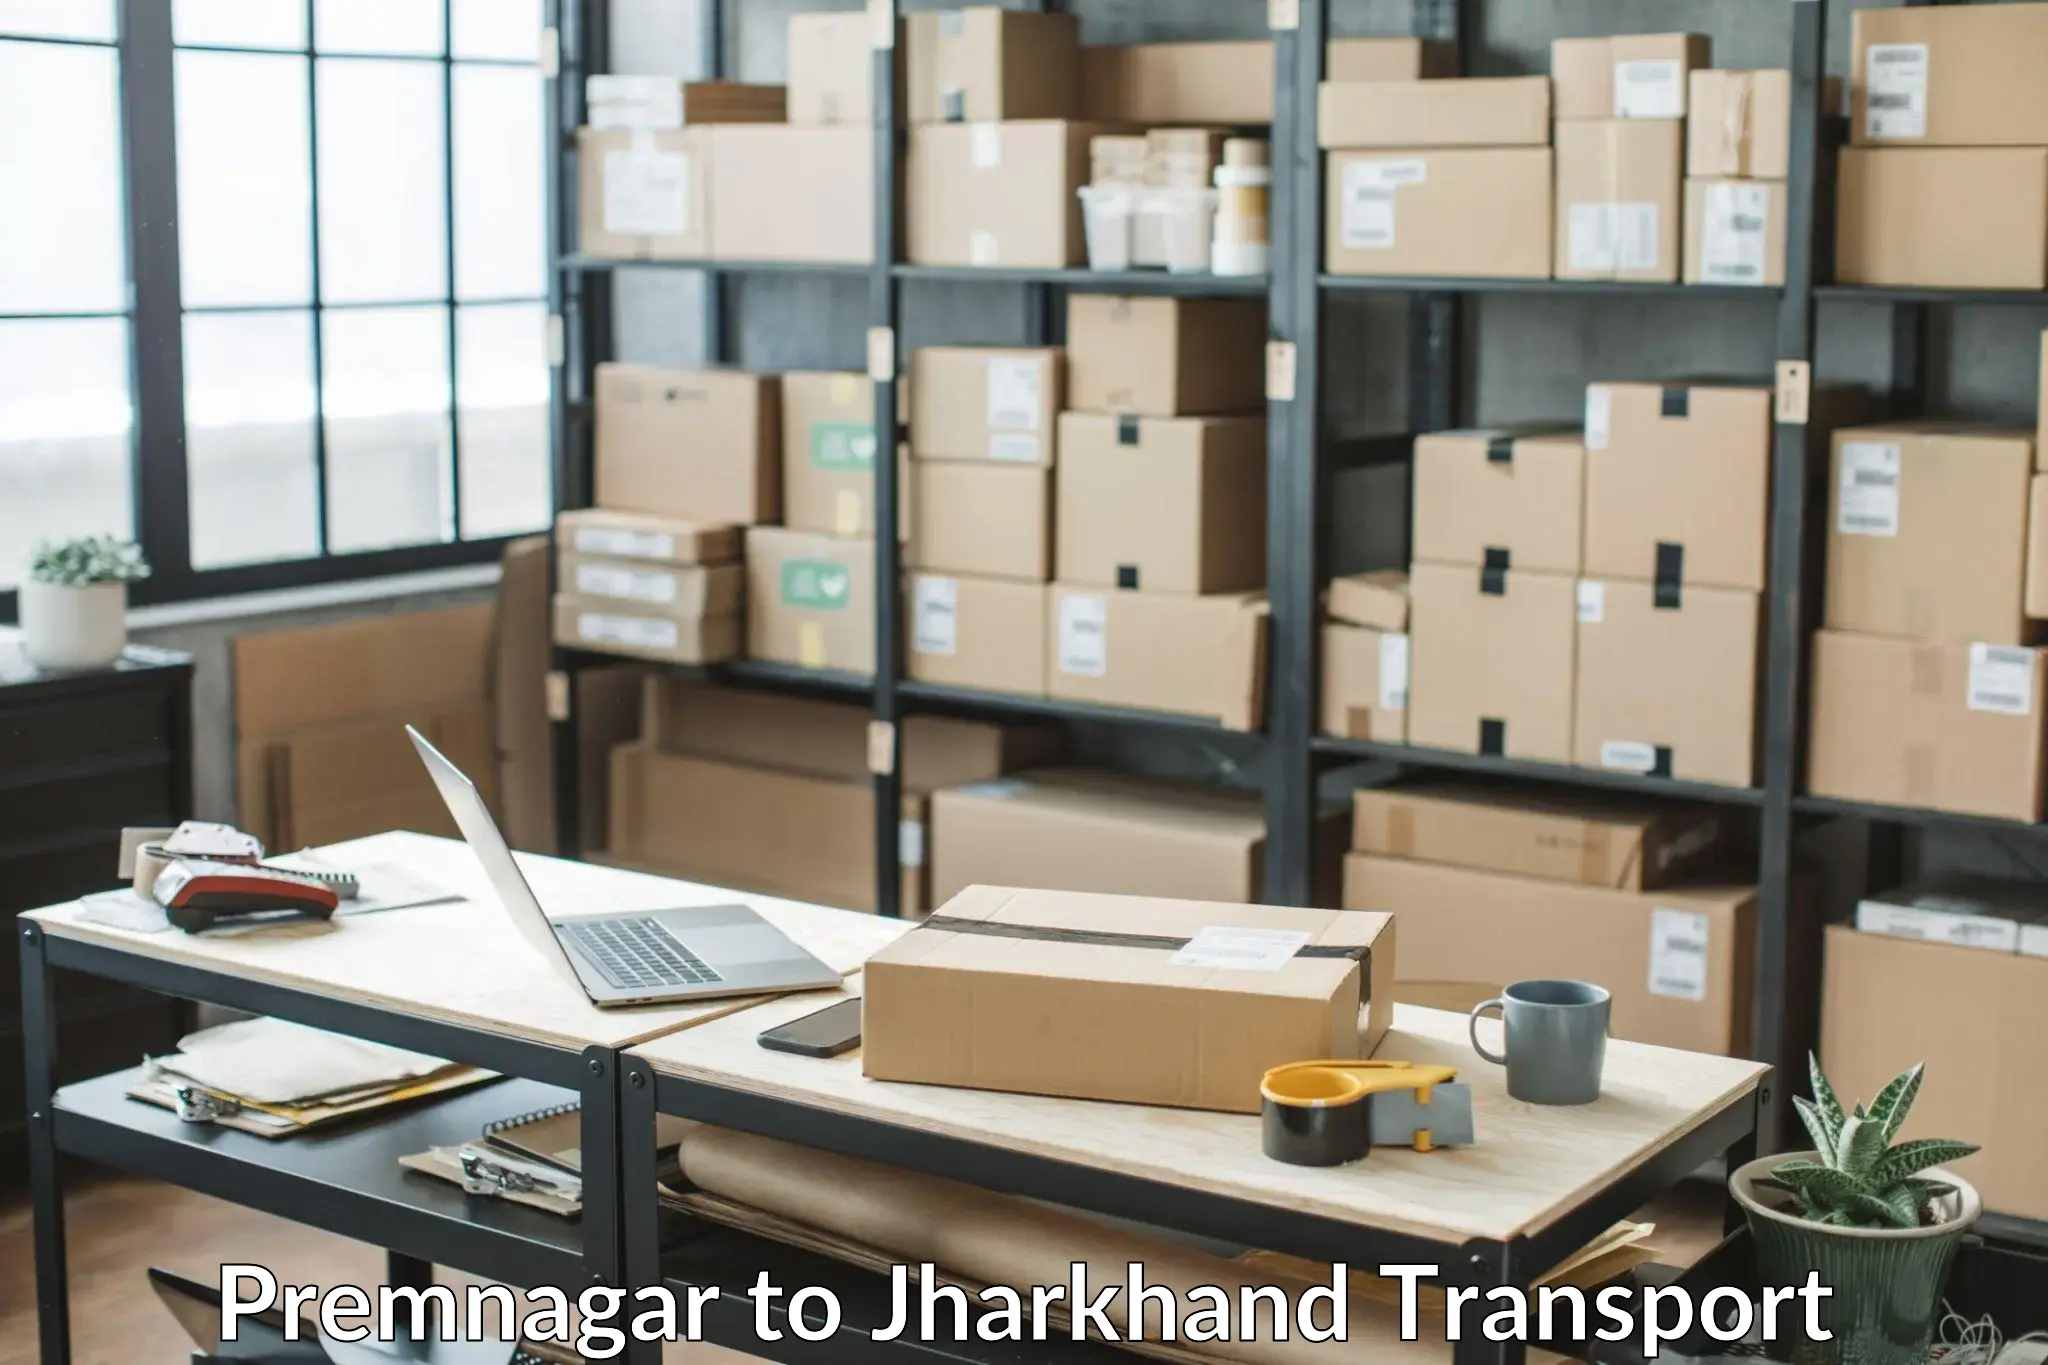 Online transport service Premnagar to Jharkhand